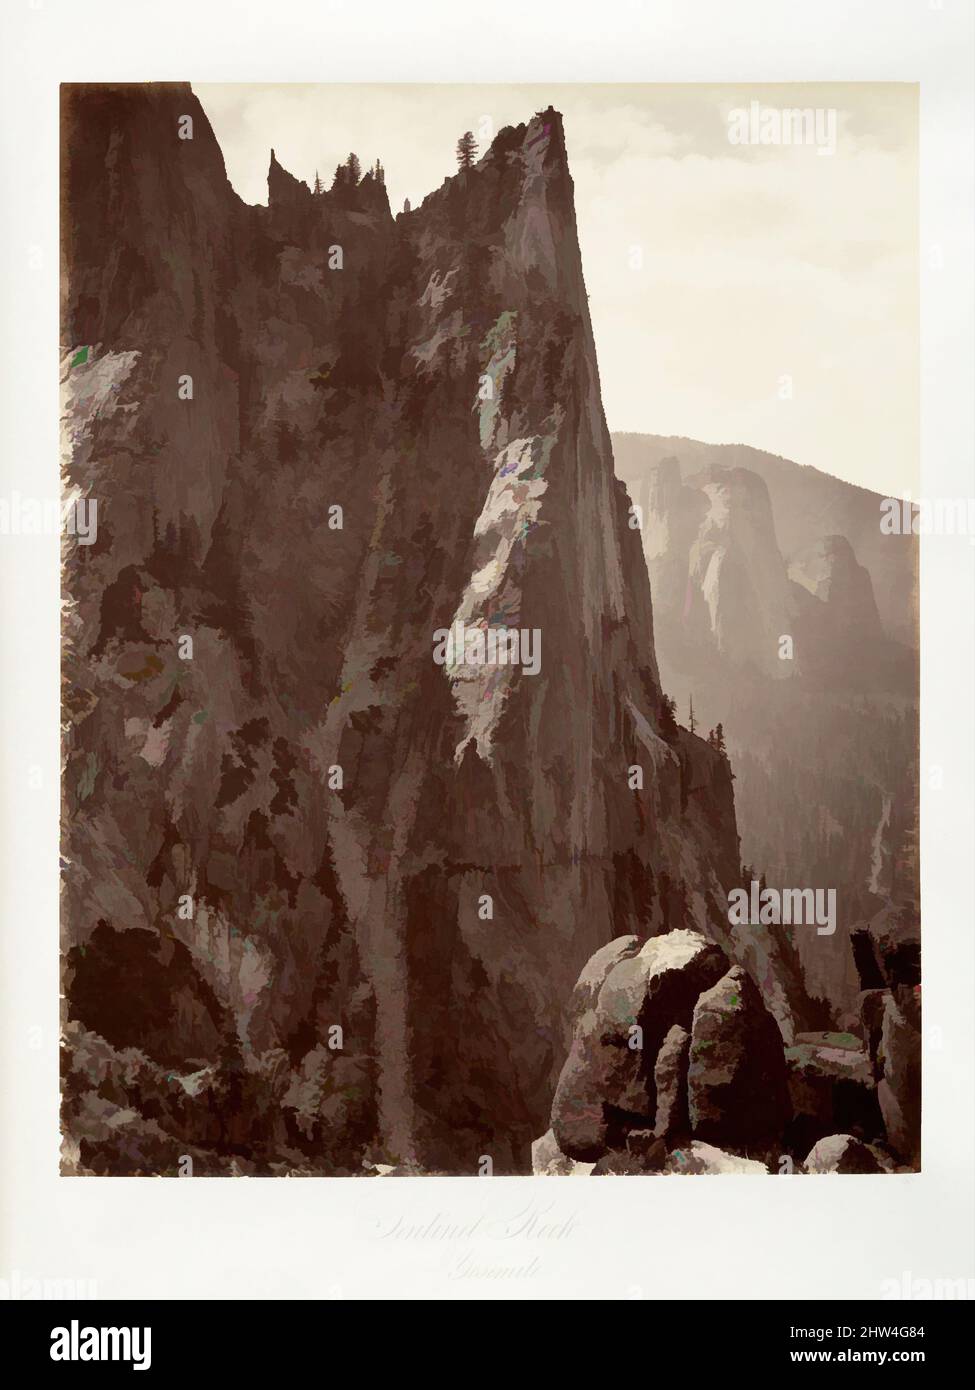 Arte ispirata a Sentinel Rock, Yosemite, ca. 1872, stampato ca. 1876, stampa in argento albume da vetro negativo, fotografie, attribuita a Carleton E. Watkins (americano, 1829–1916, opere classiche modernizzate da Artotop con un tuffo di modernità. Forme, colore e valore, impatto visivo accattivante sulle emozioni artistiche attraverso la libertà delle opere d'arte in modo contemporaneo. Un messaggio senza tempo che persegue una nuova direzione selvaggiamente creativa. Artisti che si rivolgono al supporto digitale e creano l'NFT Artotop Foto Stock